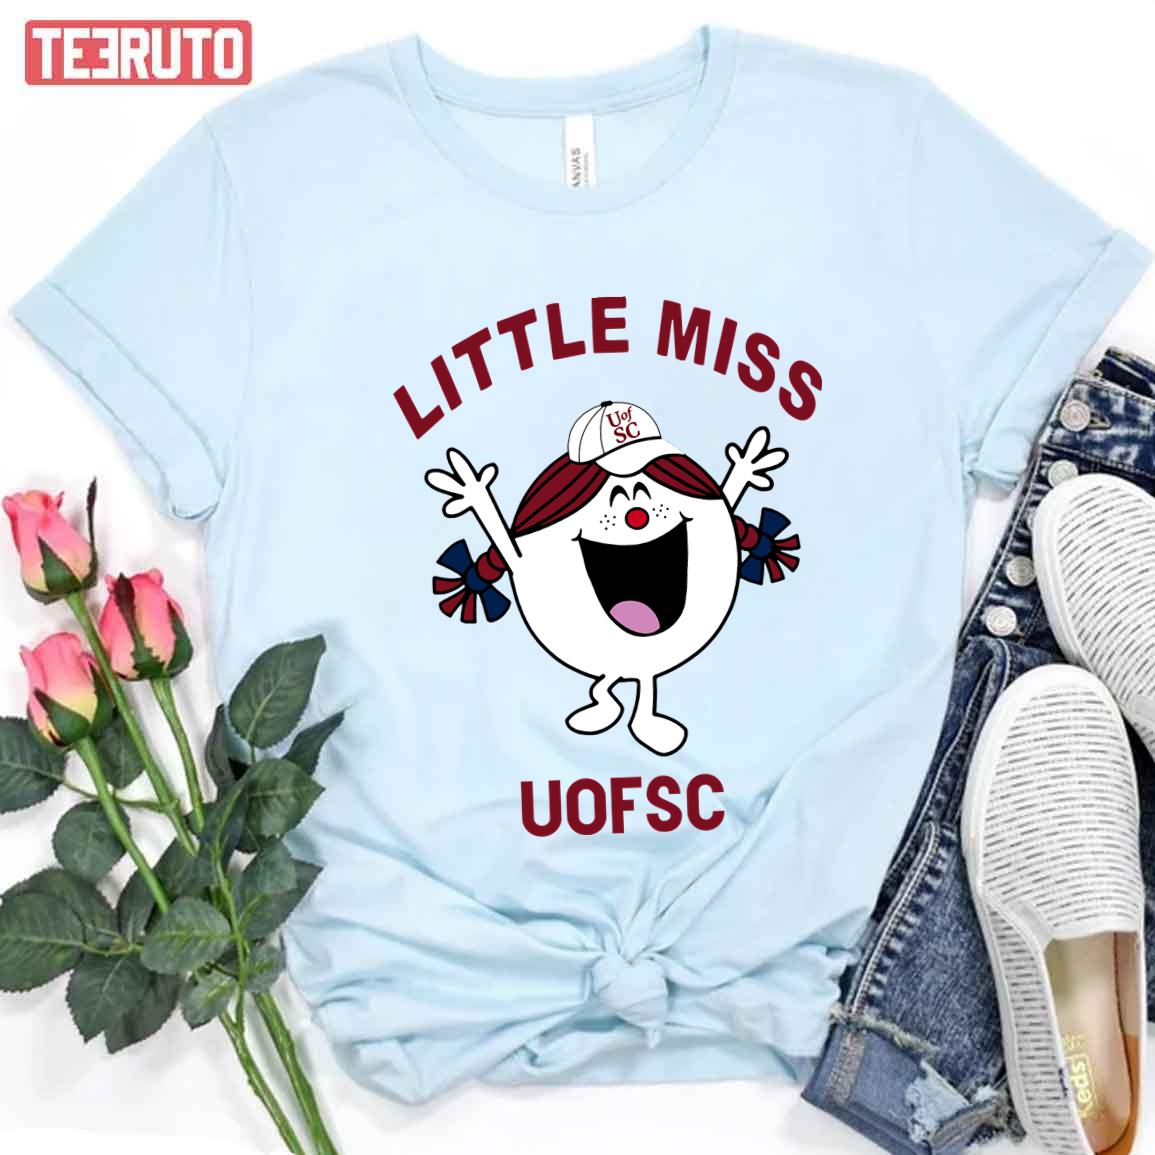 Football UOFSC Little Miss Unisex T-Shirt